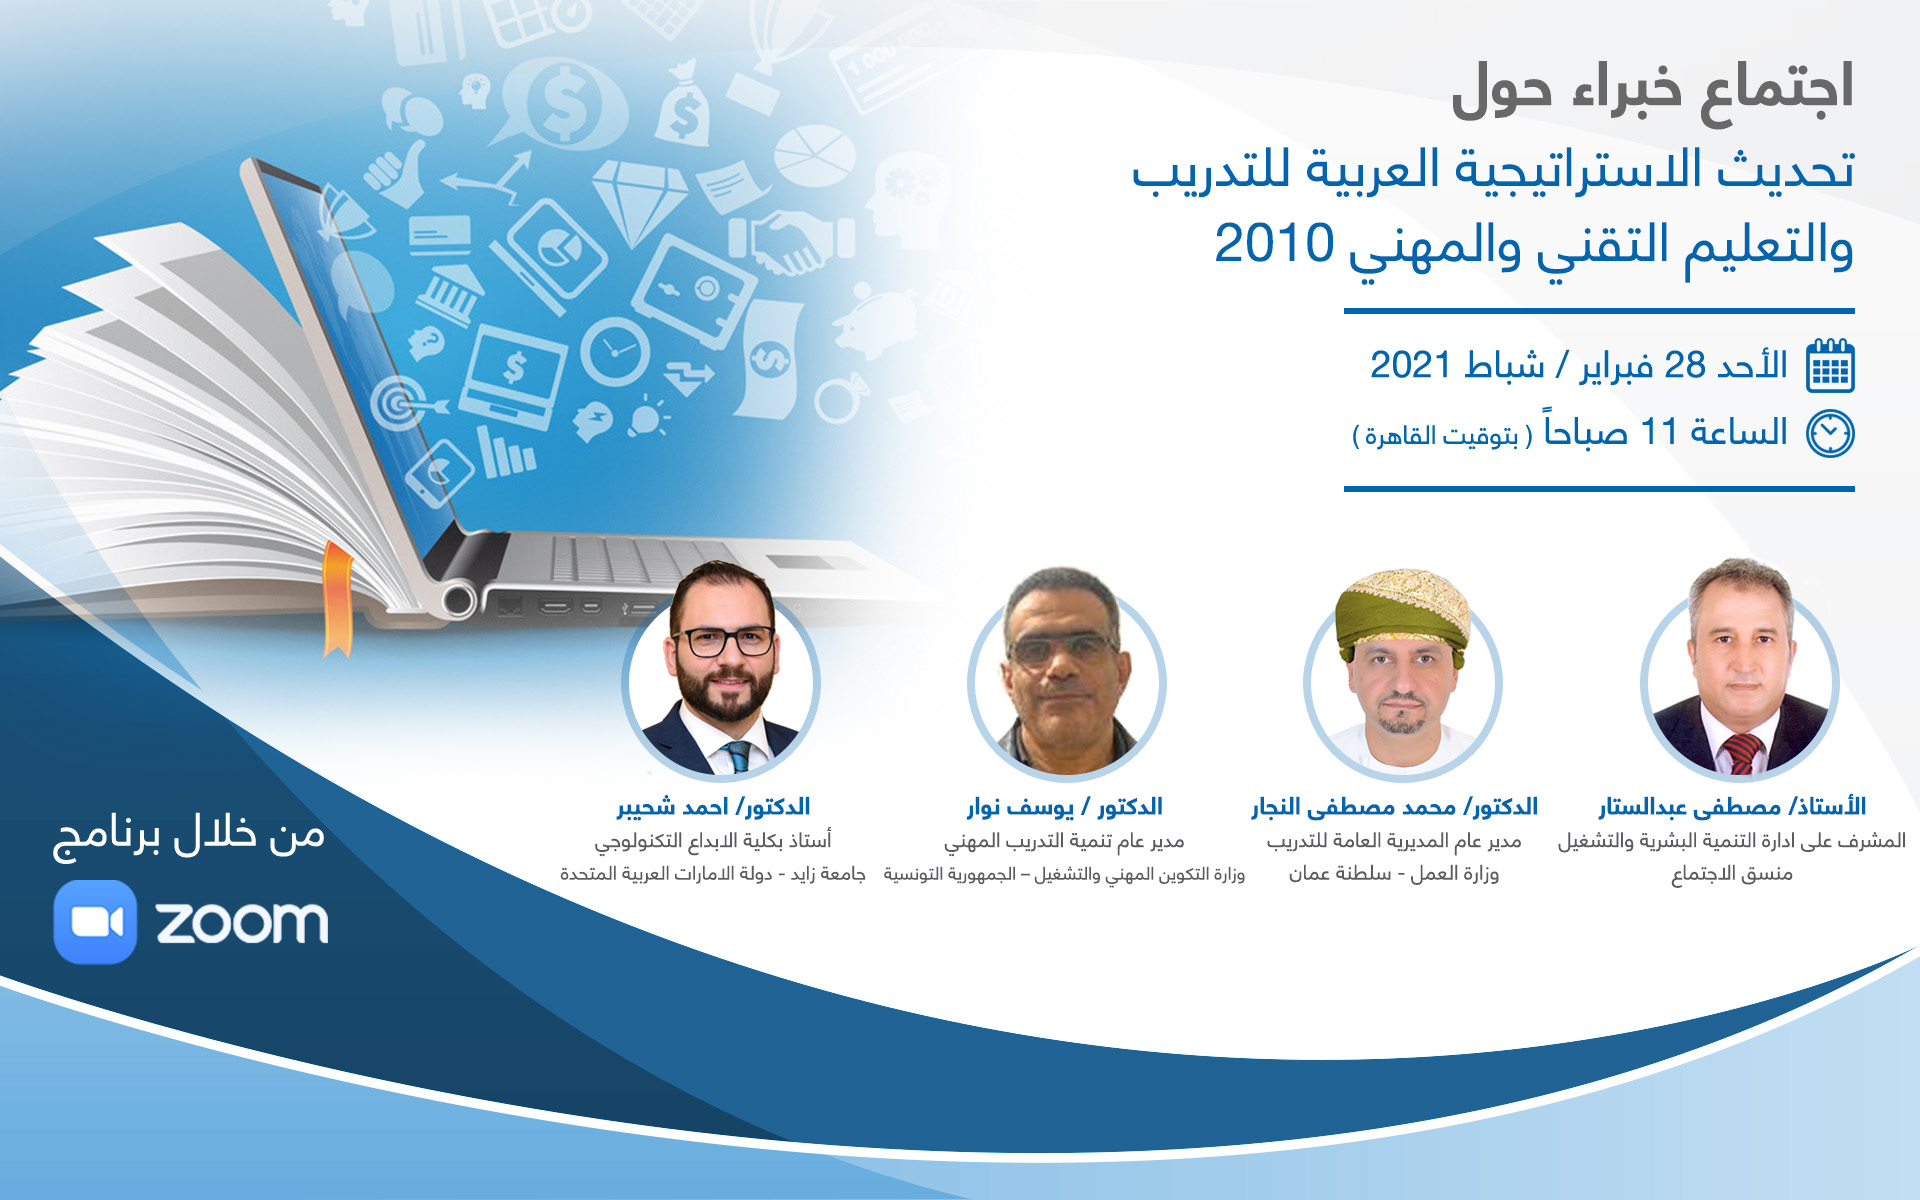 اجتماع خبراء حول تحديث الاستراتيجية العربية للتعليم والتدريب التقني والمهني 2010